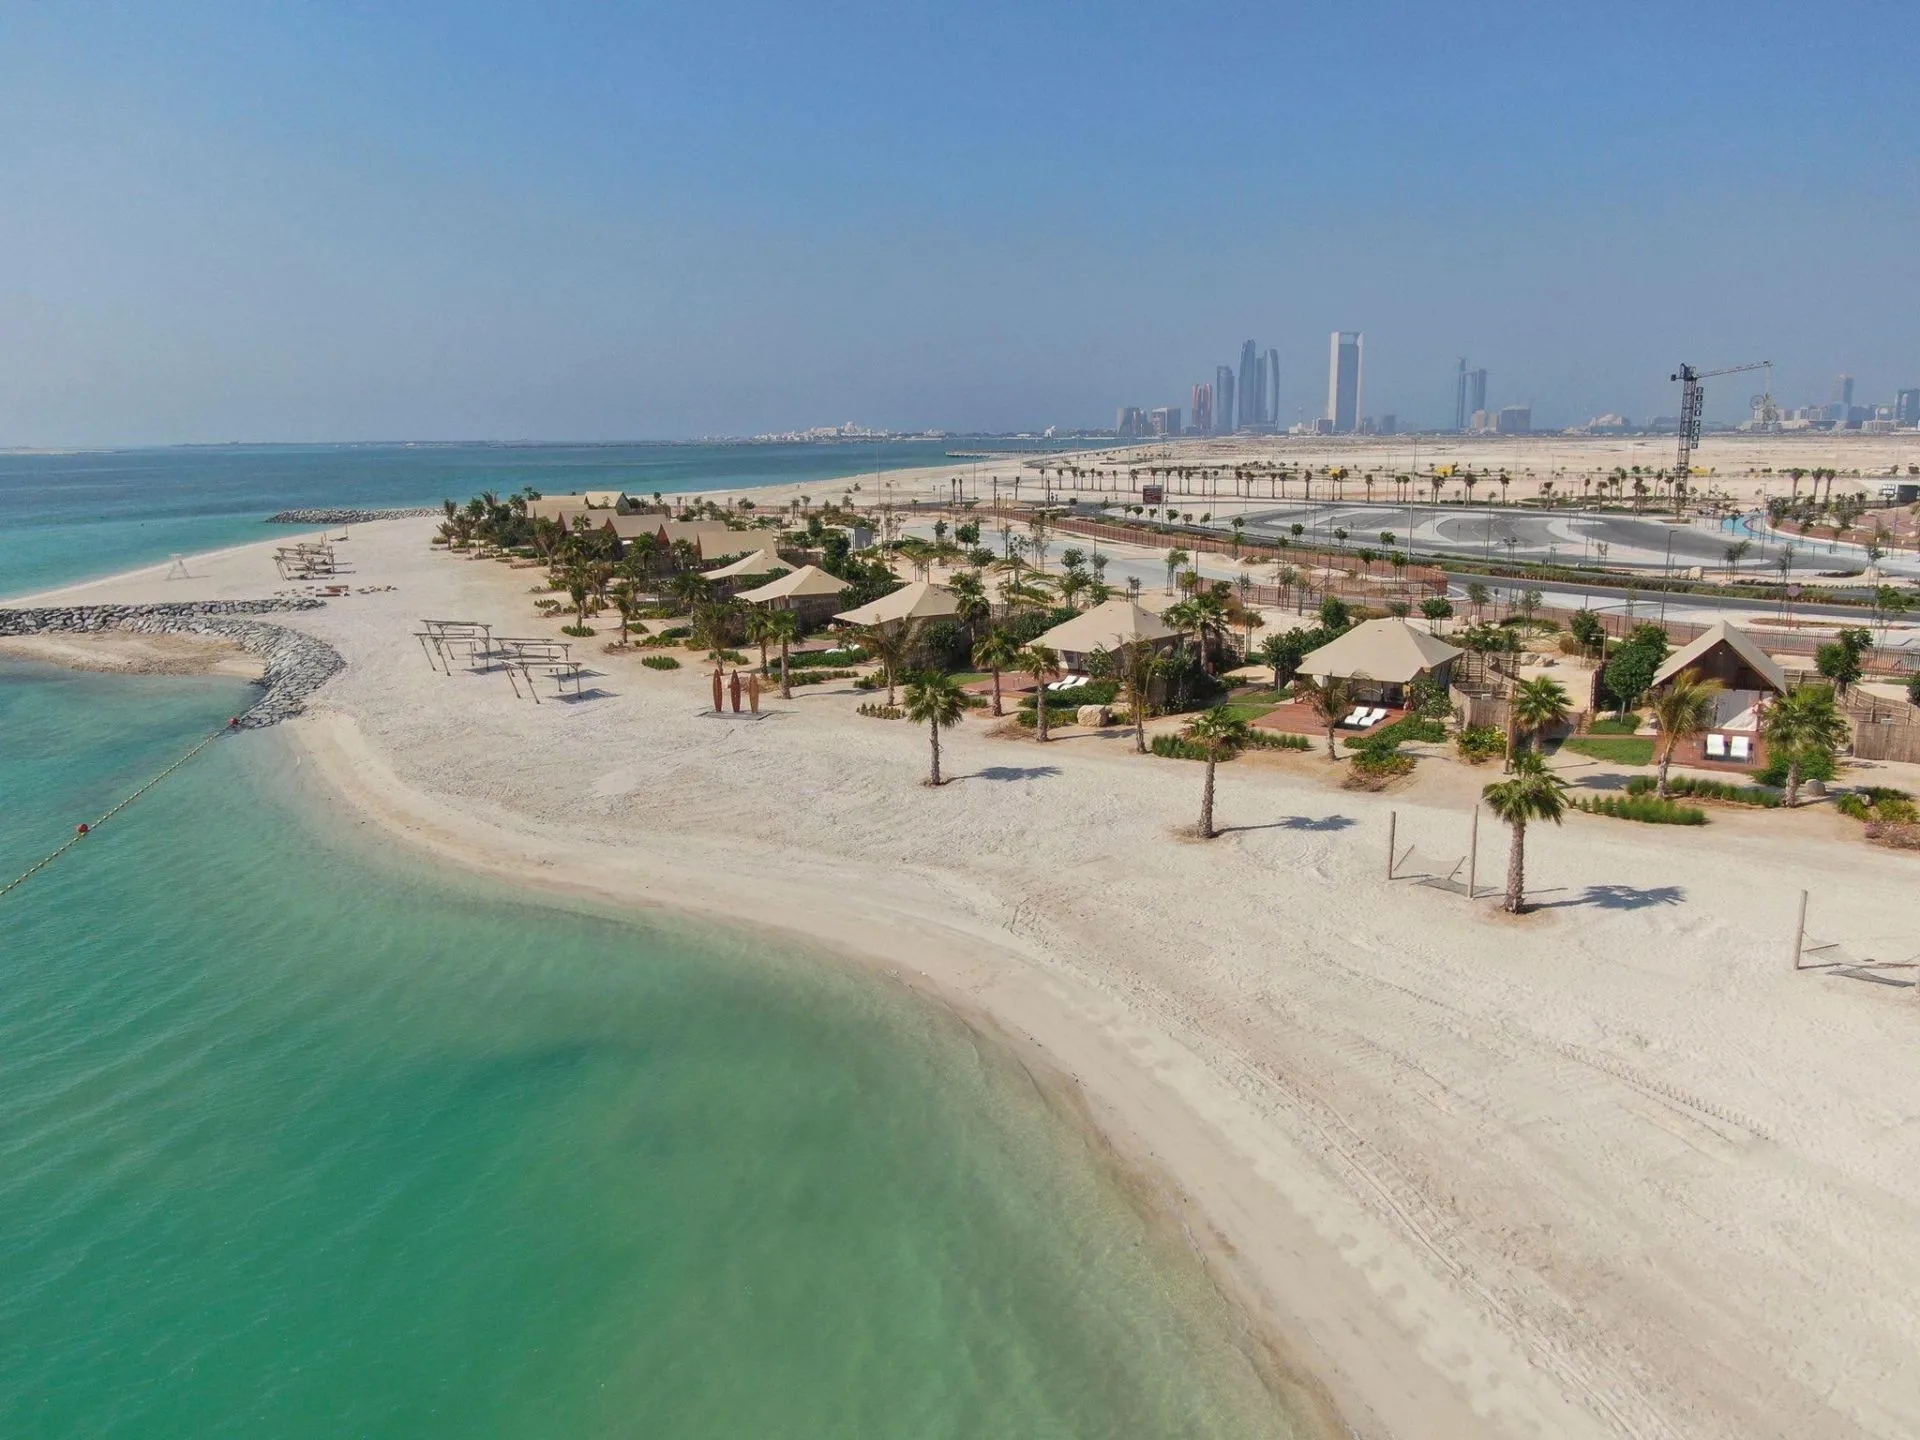 Пляж Al Hudayriat Beach - тихое место для отдыха в Дубае, ОАЭ.